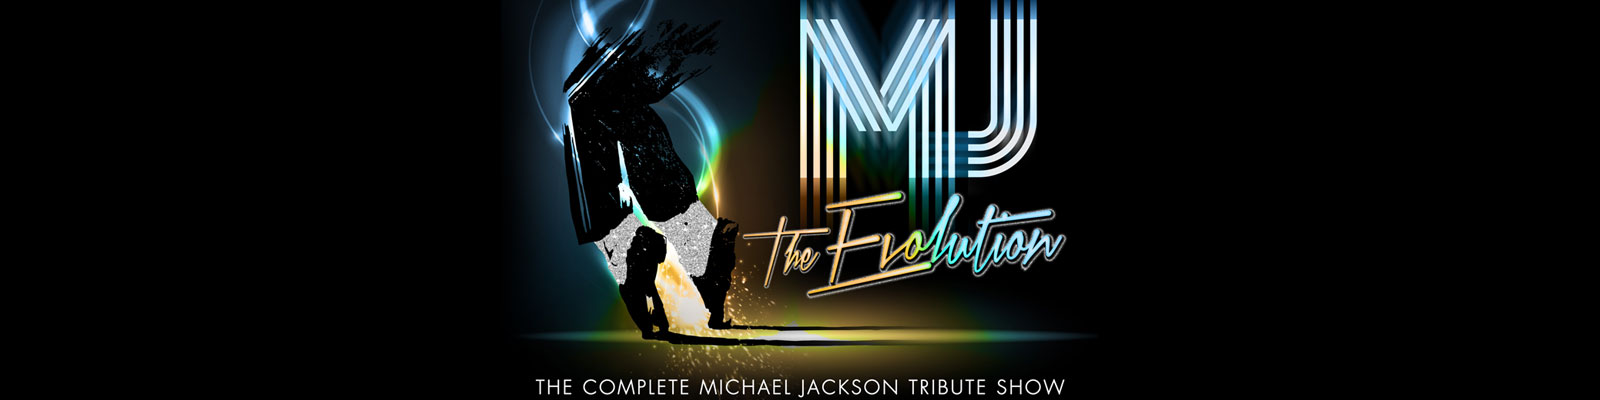 MJ The Evolution Live in Las Vegas